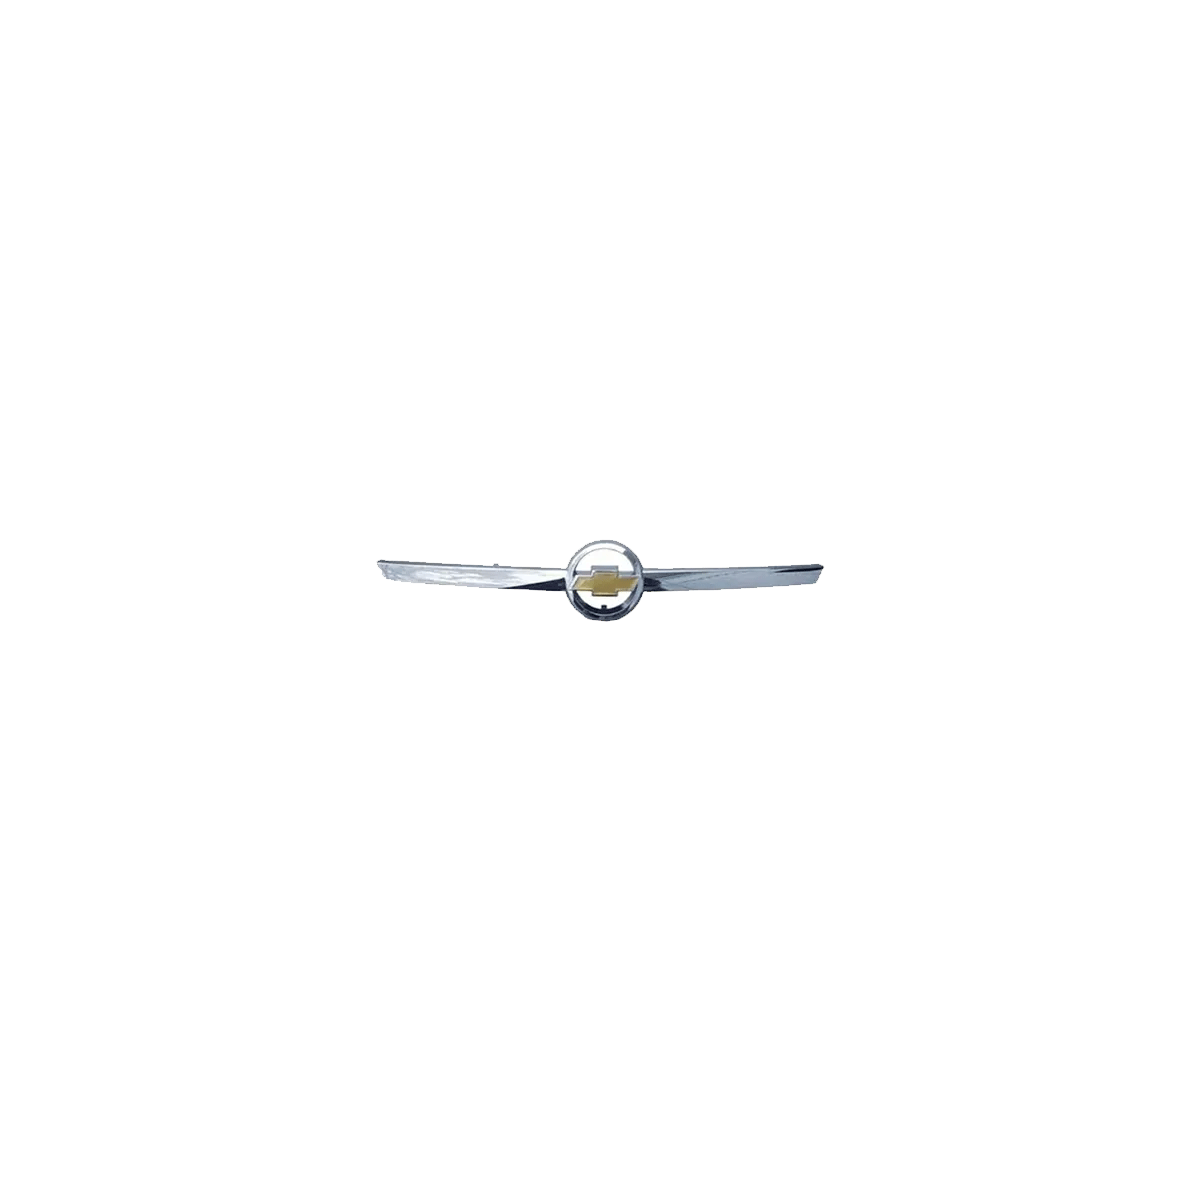 Emblema Grade Astra 02/ Com Gravata Dourada